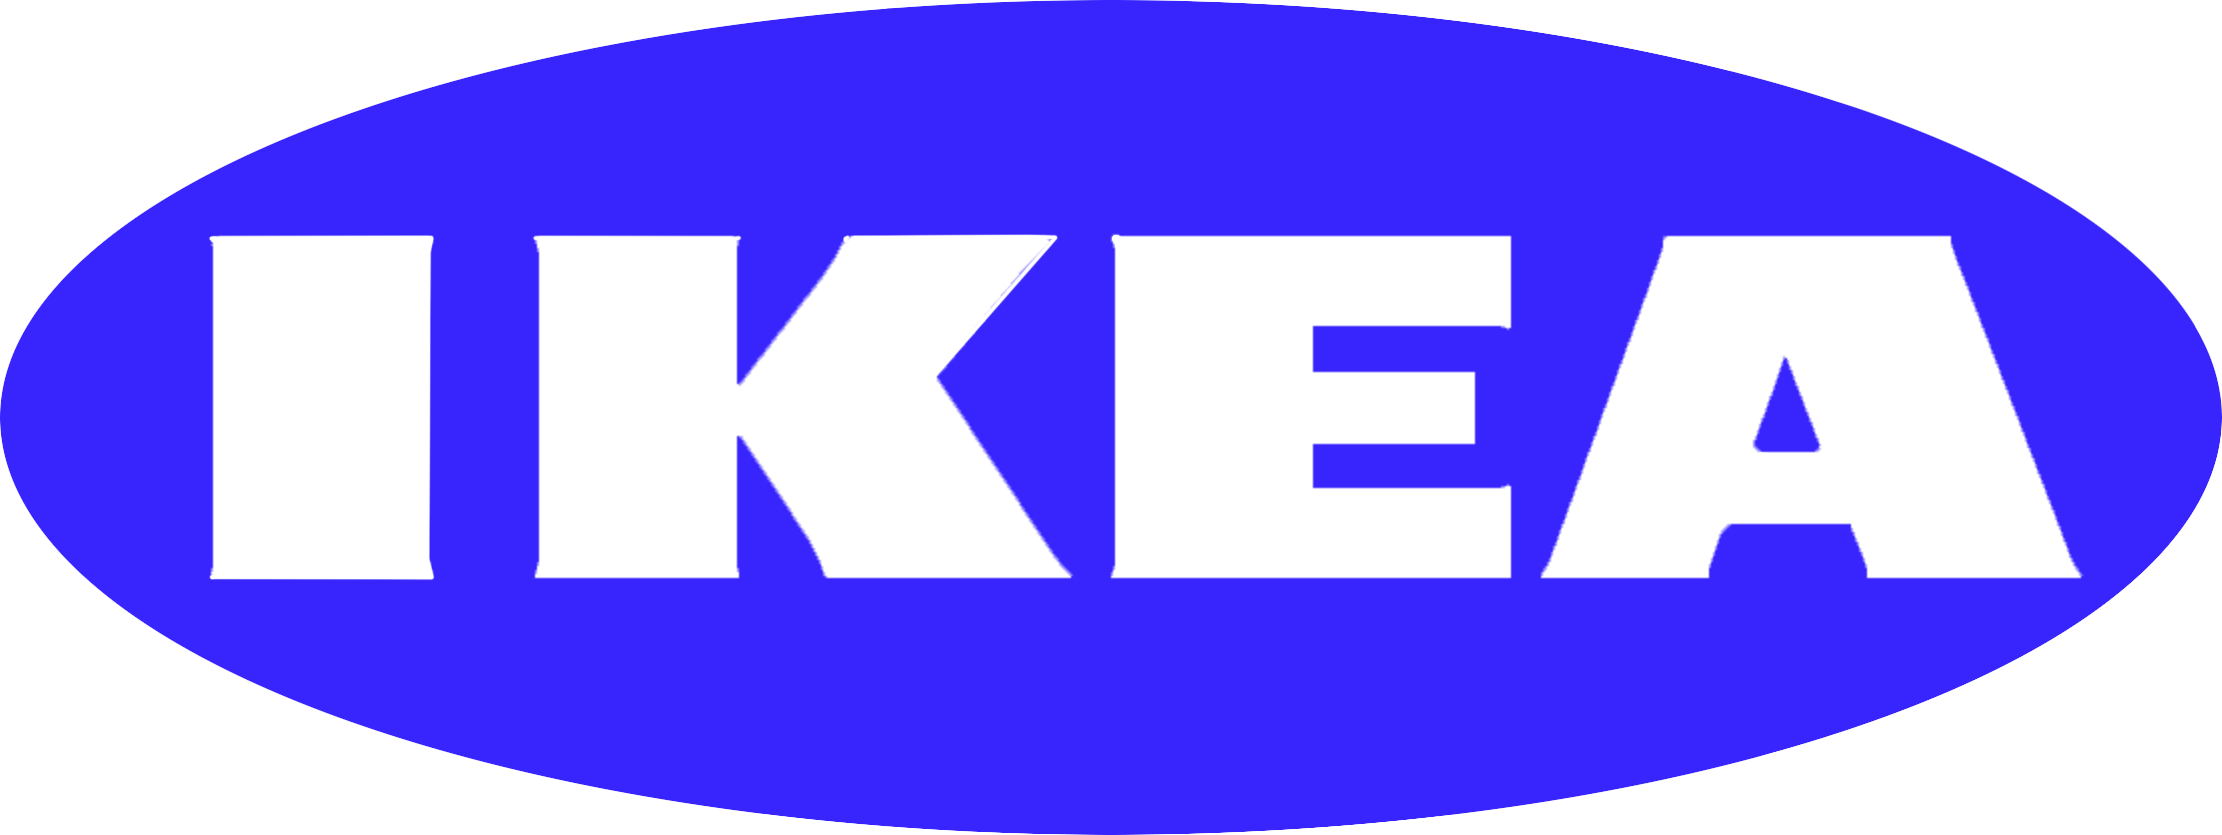 파란색의 IKEA 로고